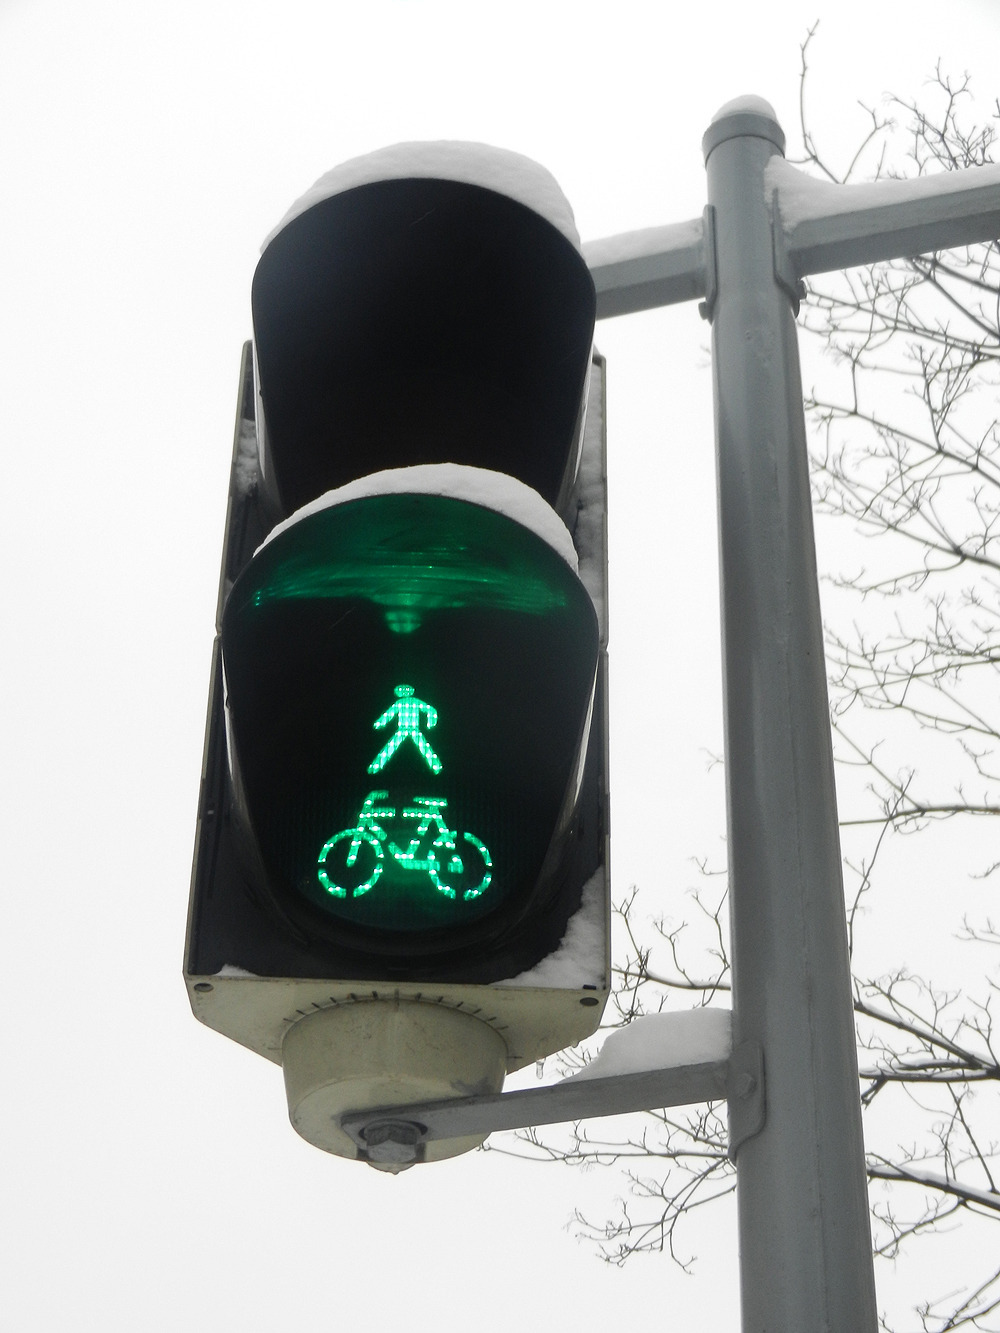 Vision für den Strassenverkehr: Intelligente Ampeln regeln